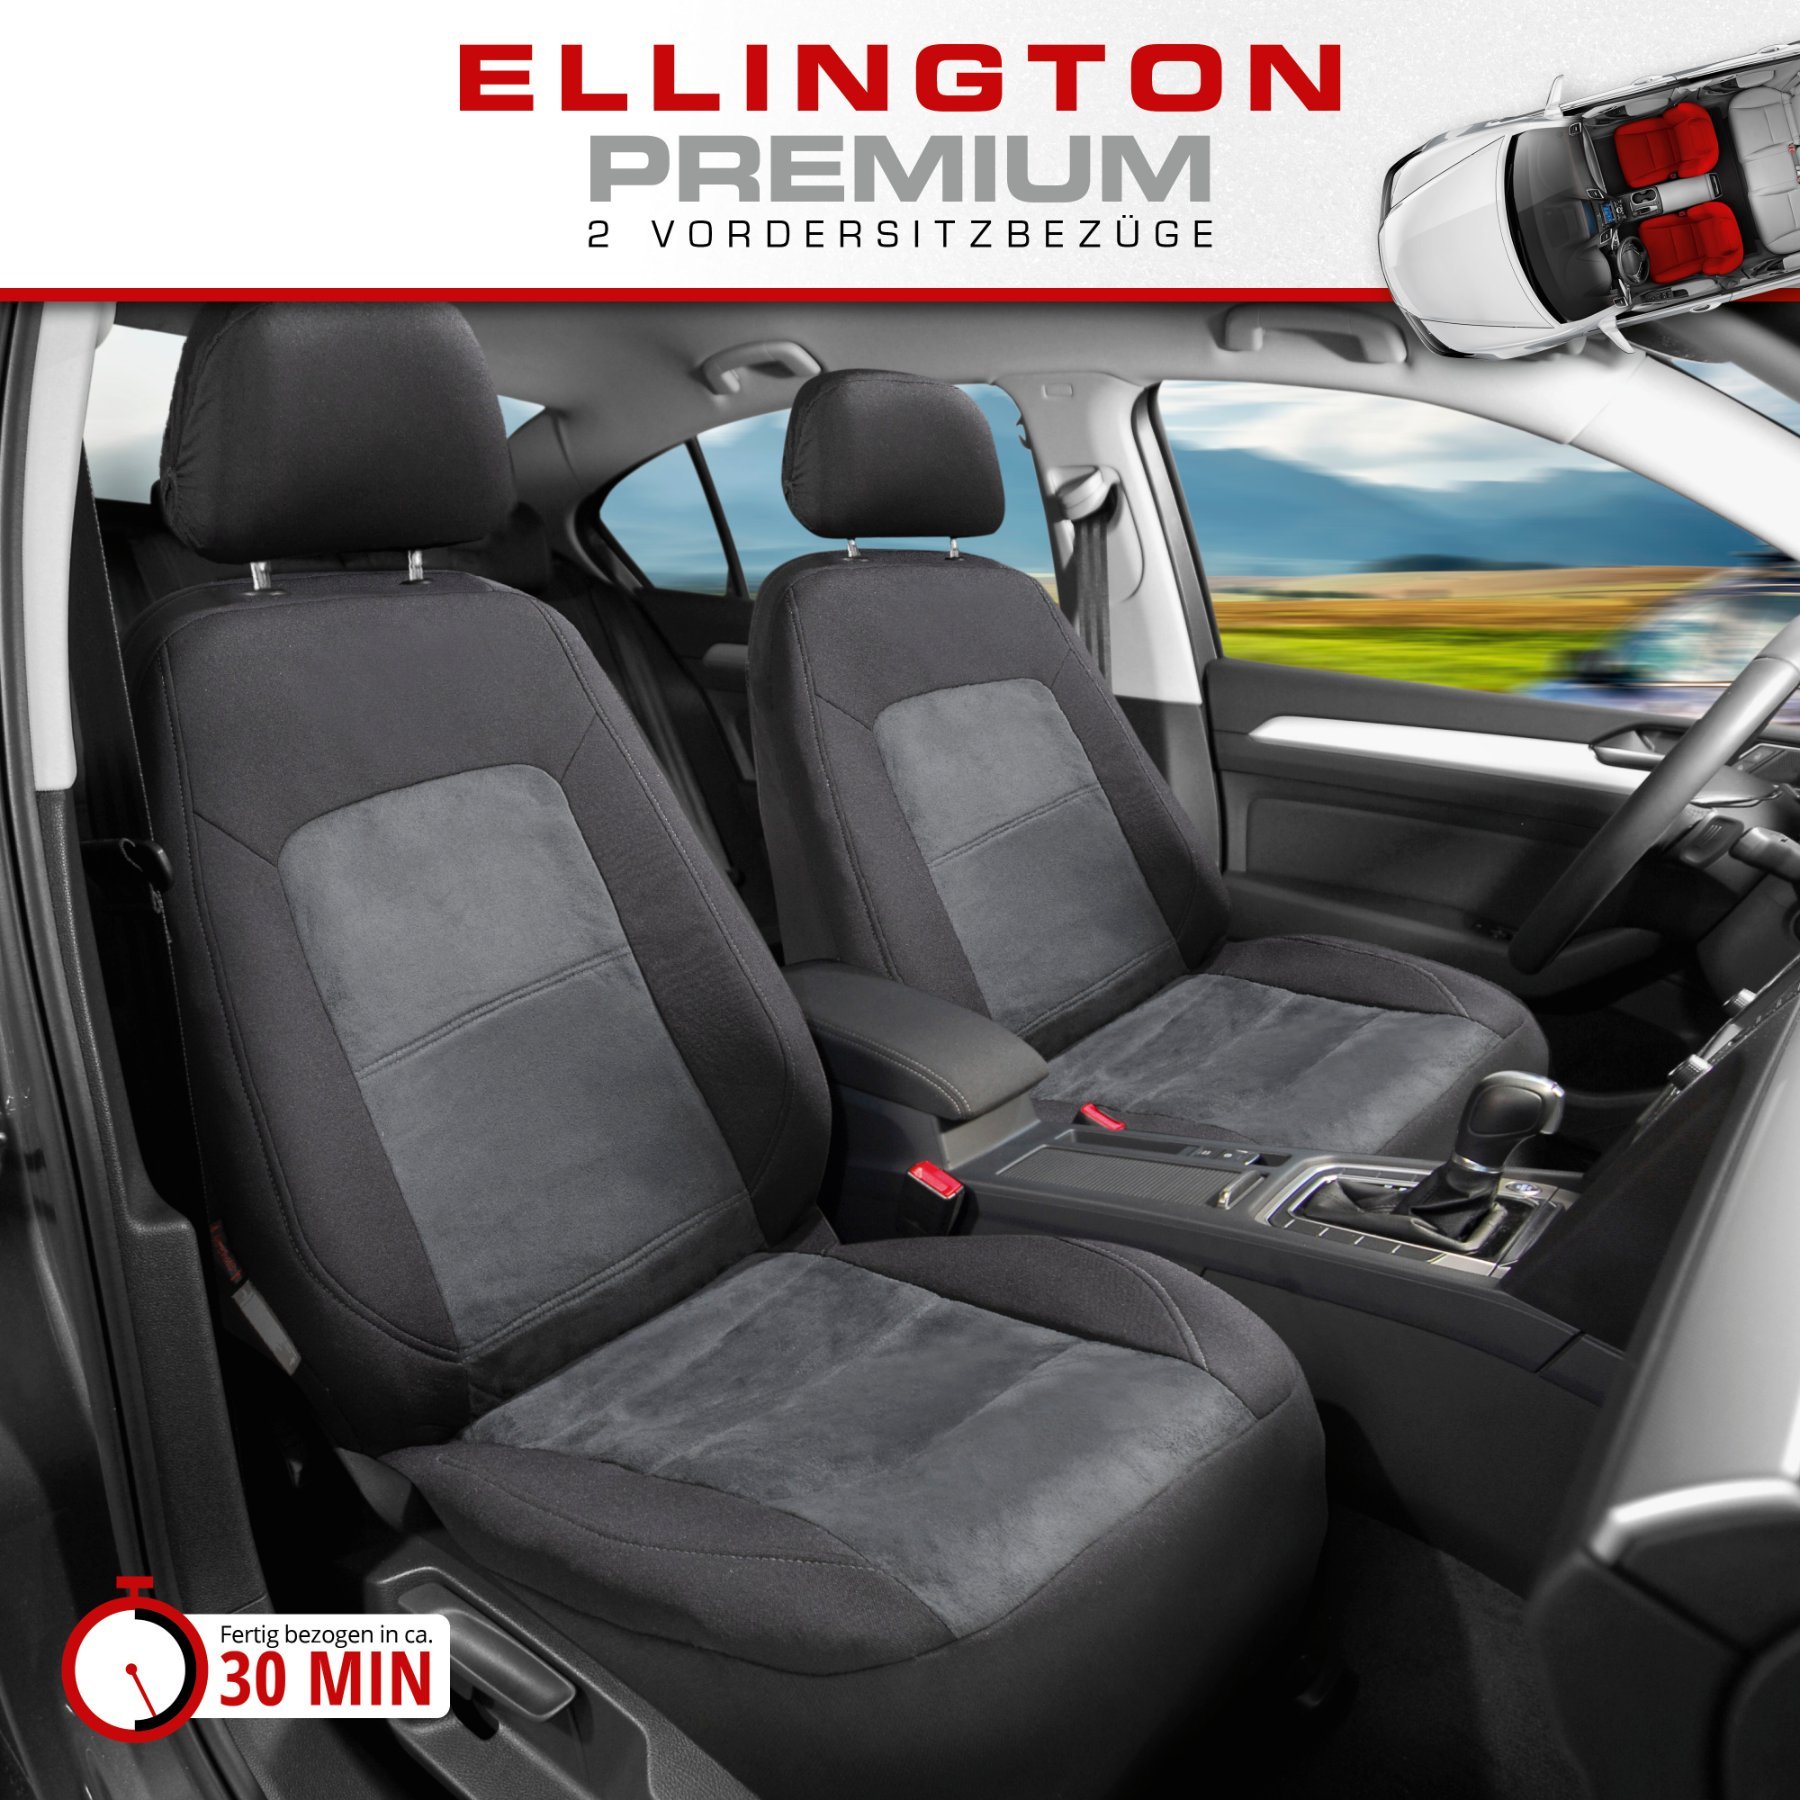 ZIPP IT Premium Autositzbezüge Ellington für zwei Vordersitze mit Reißverschluss-System schwarz/grau